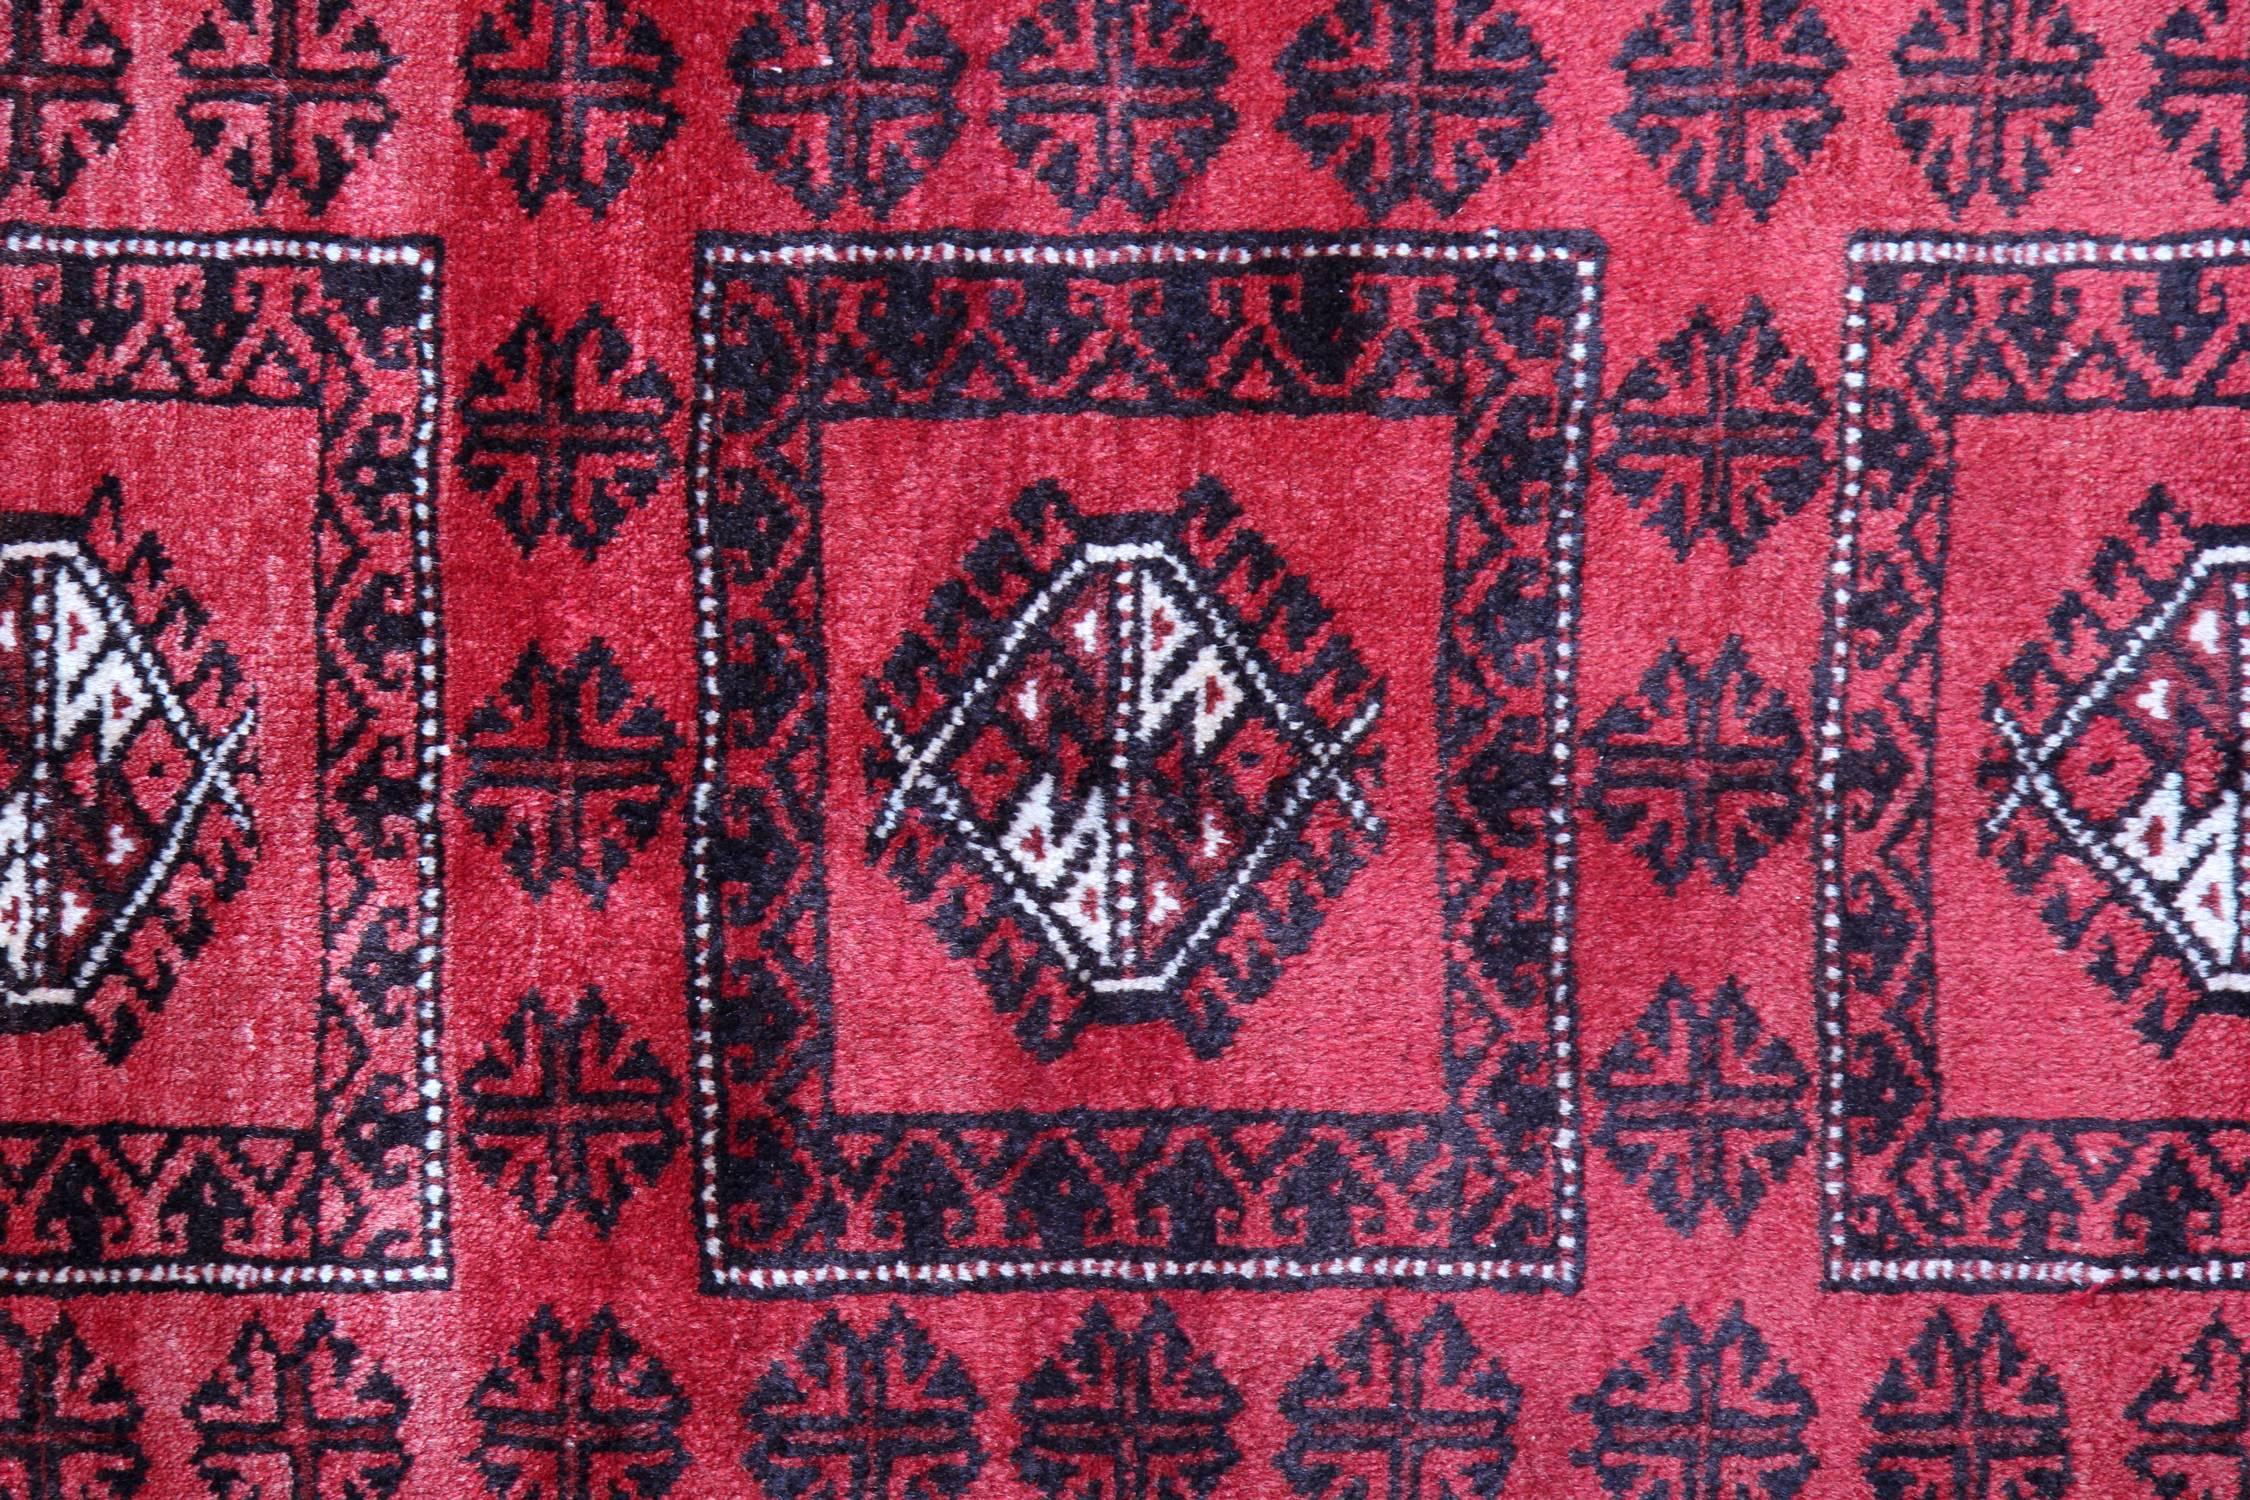 Rustic Handwoven Rug Oriental Afghan Carpet Red Wool Area Rug